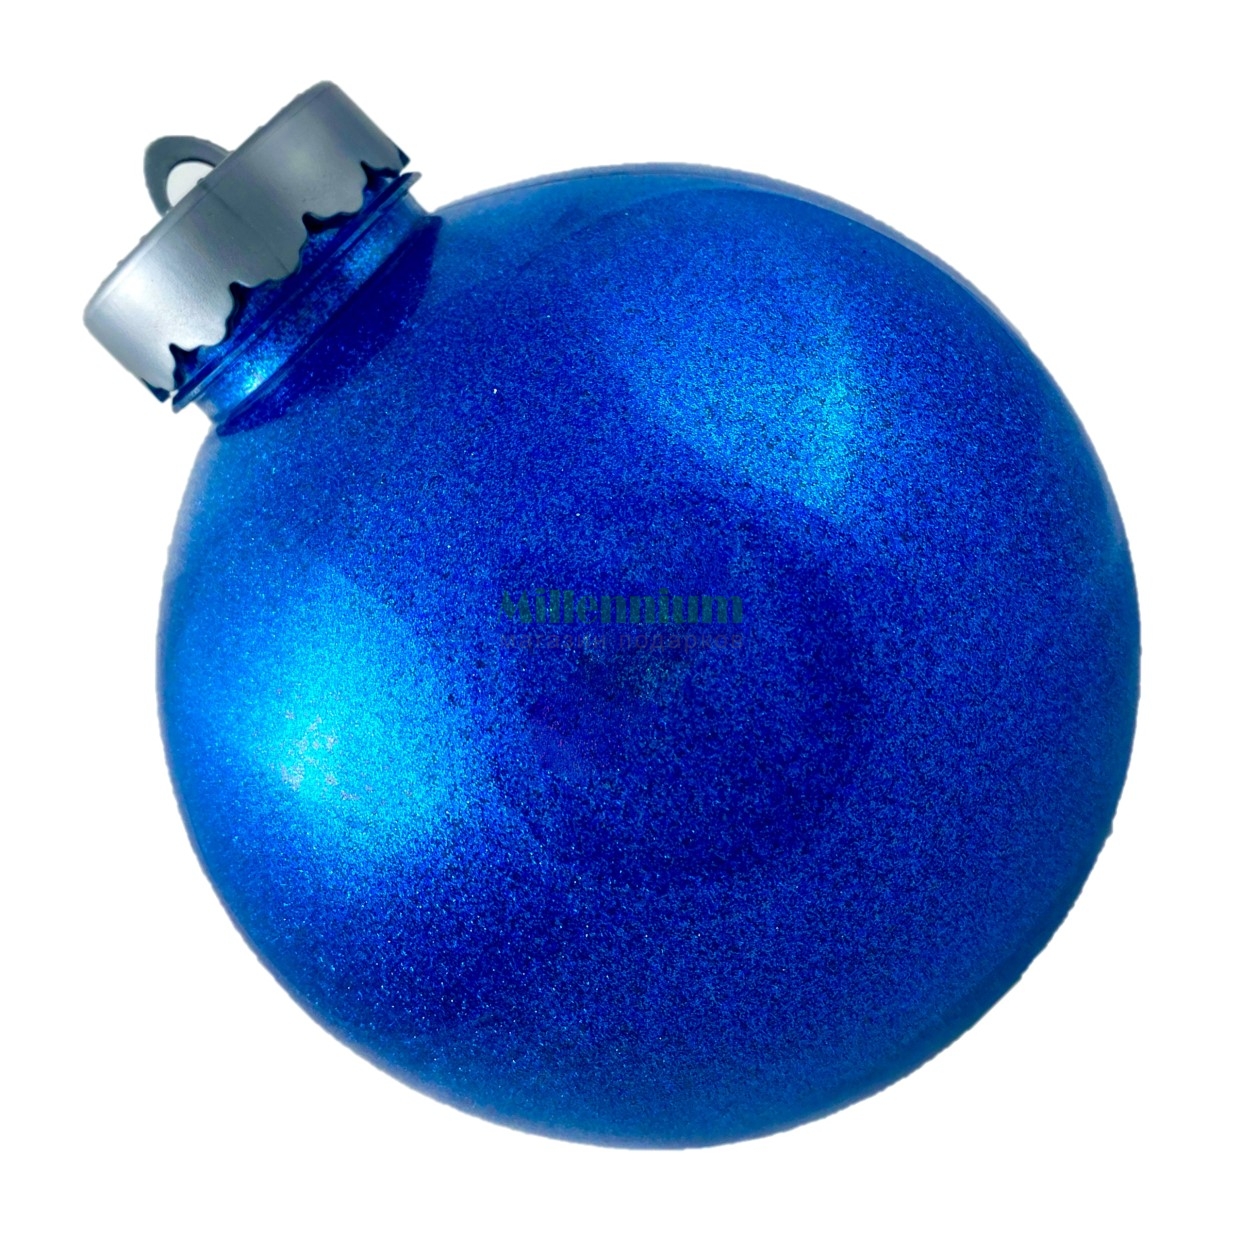 Ёлочный шар15 см  Синий блестящий  МДМ